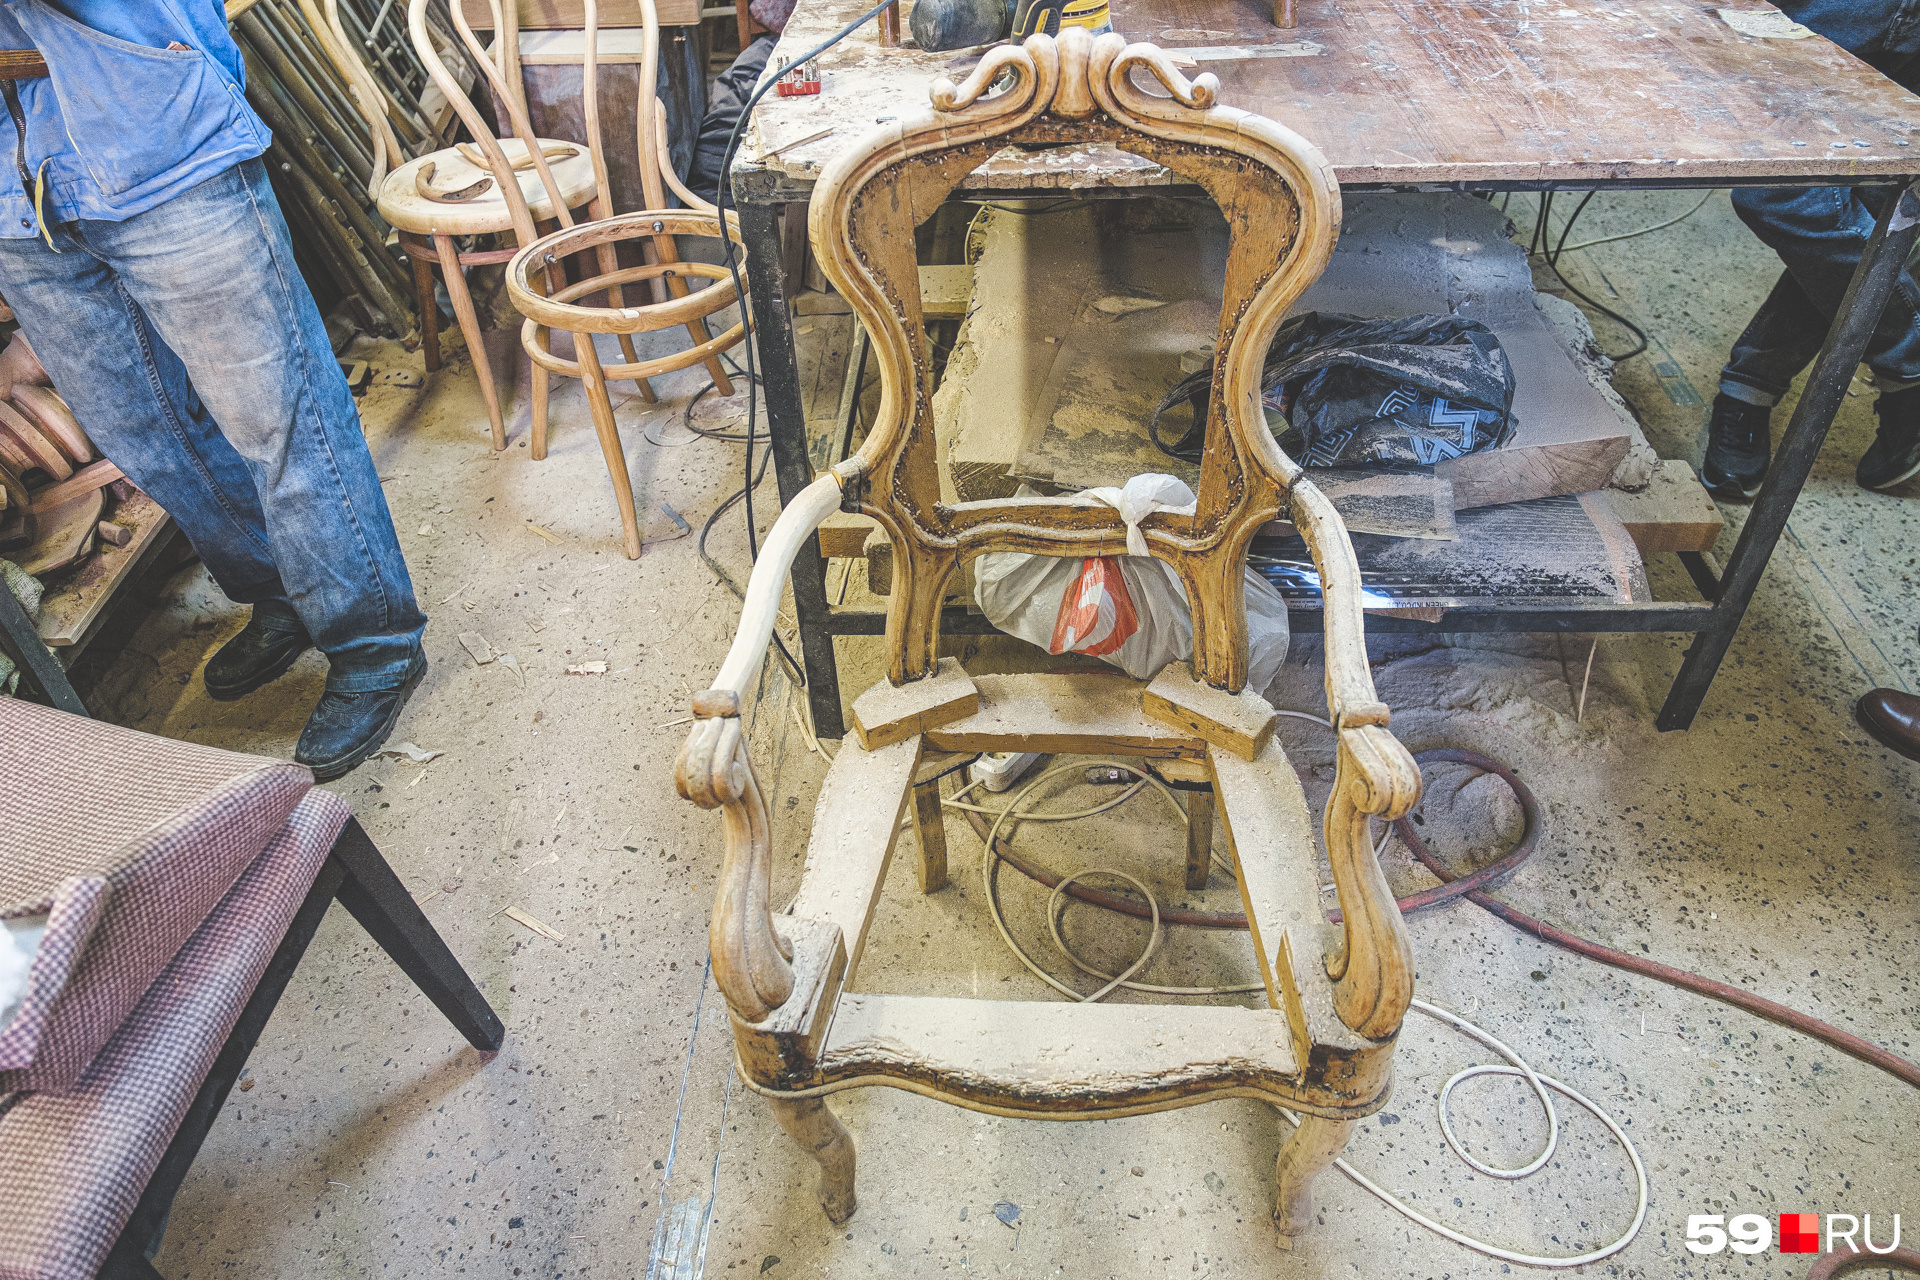 Этот стул только готовится к реставрации